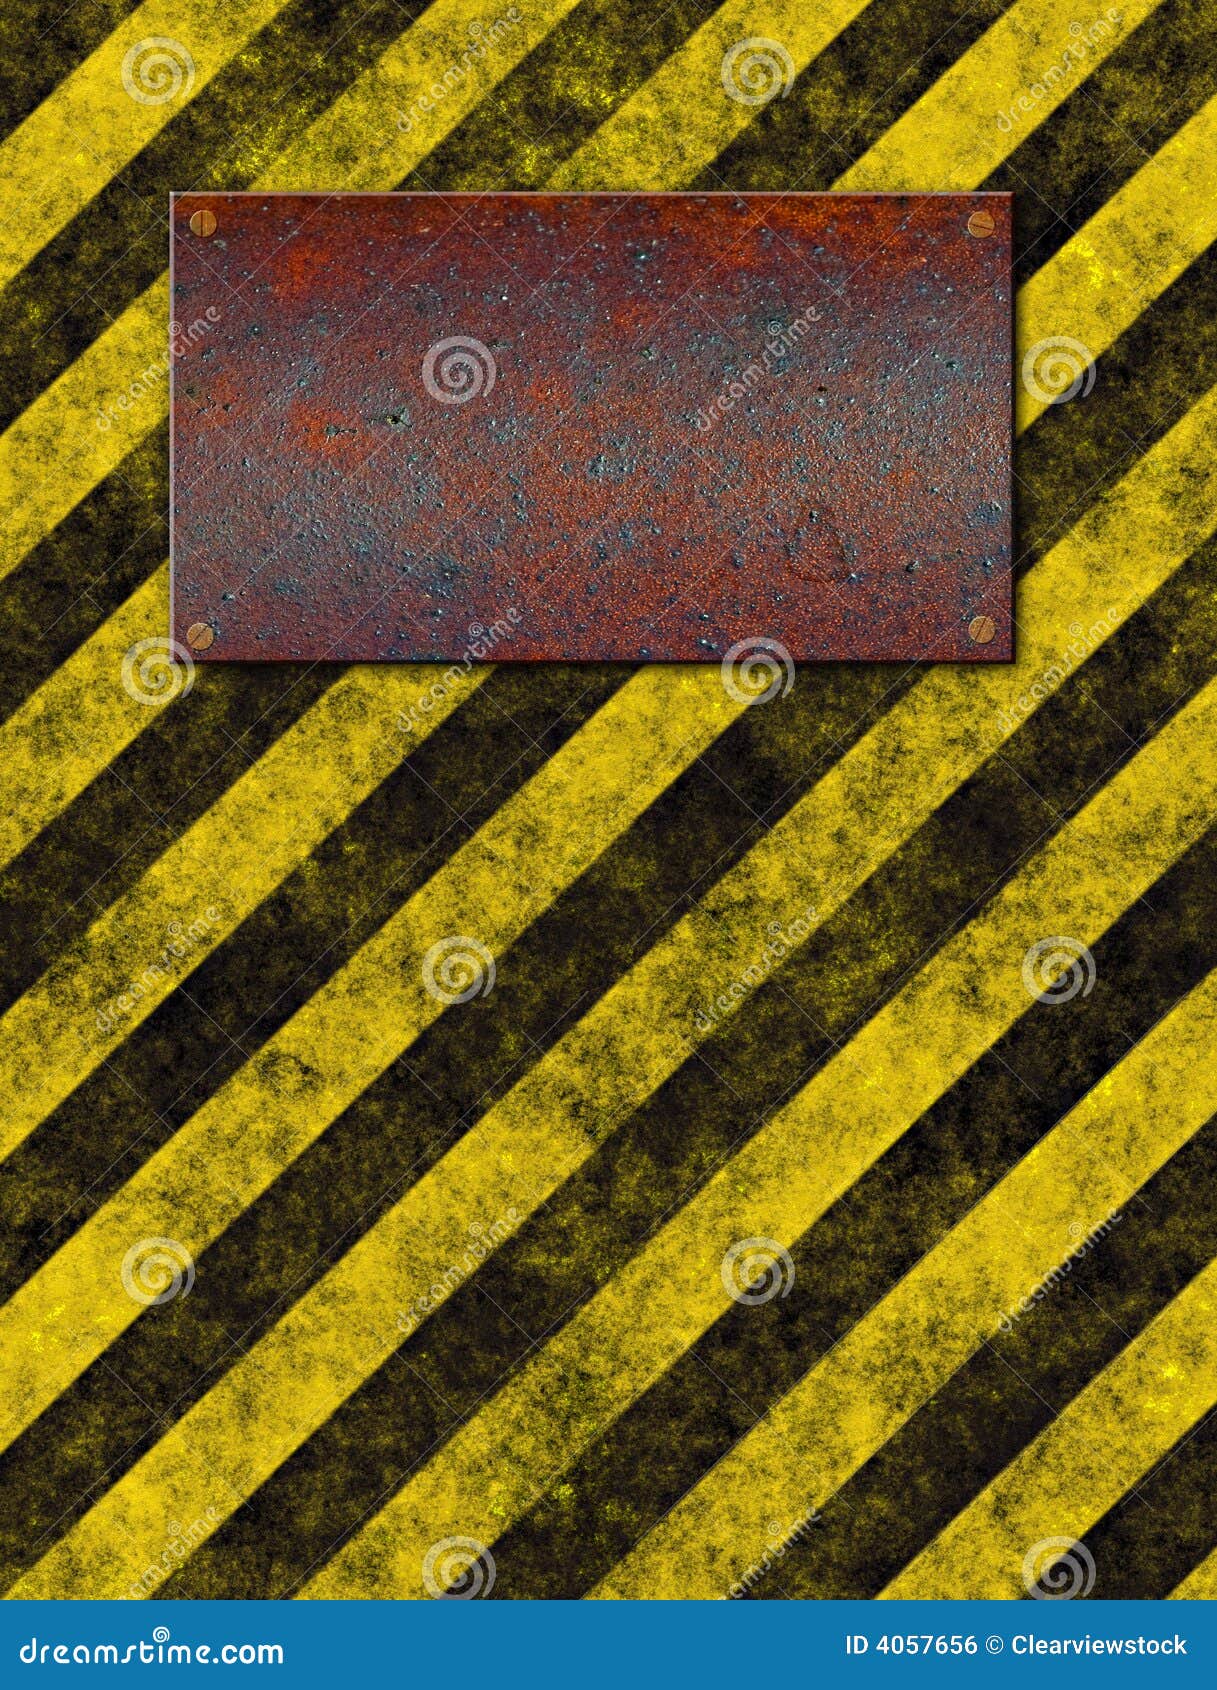 знак металлической пластинкы stripes предупреждение. металлическая пластинка grungy металла старая заржавела желтый цвет предупреждения знака